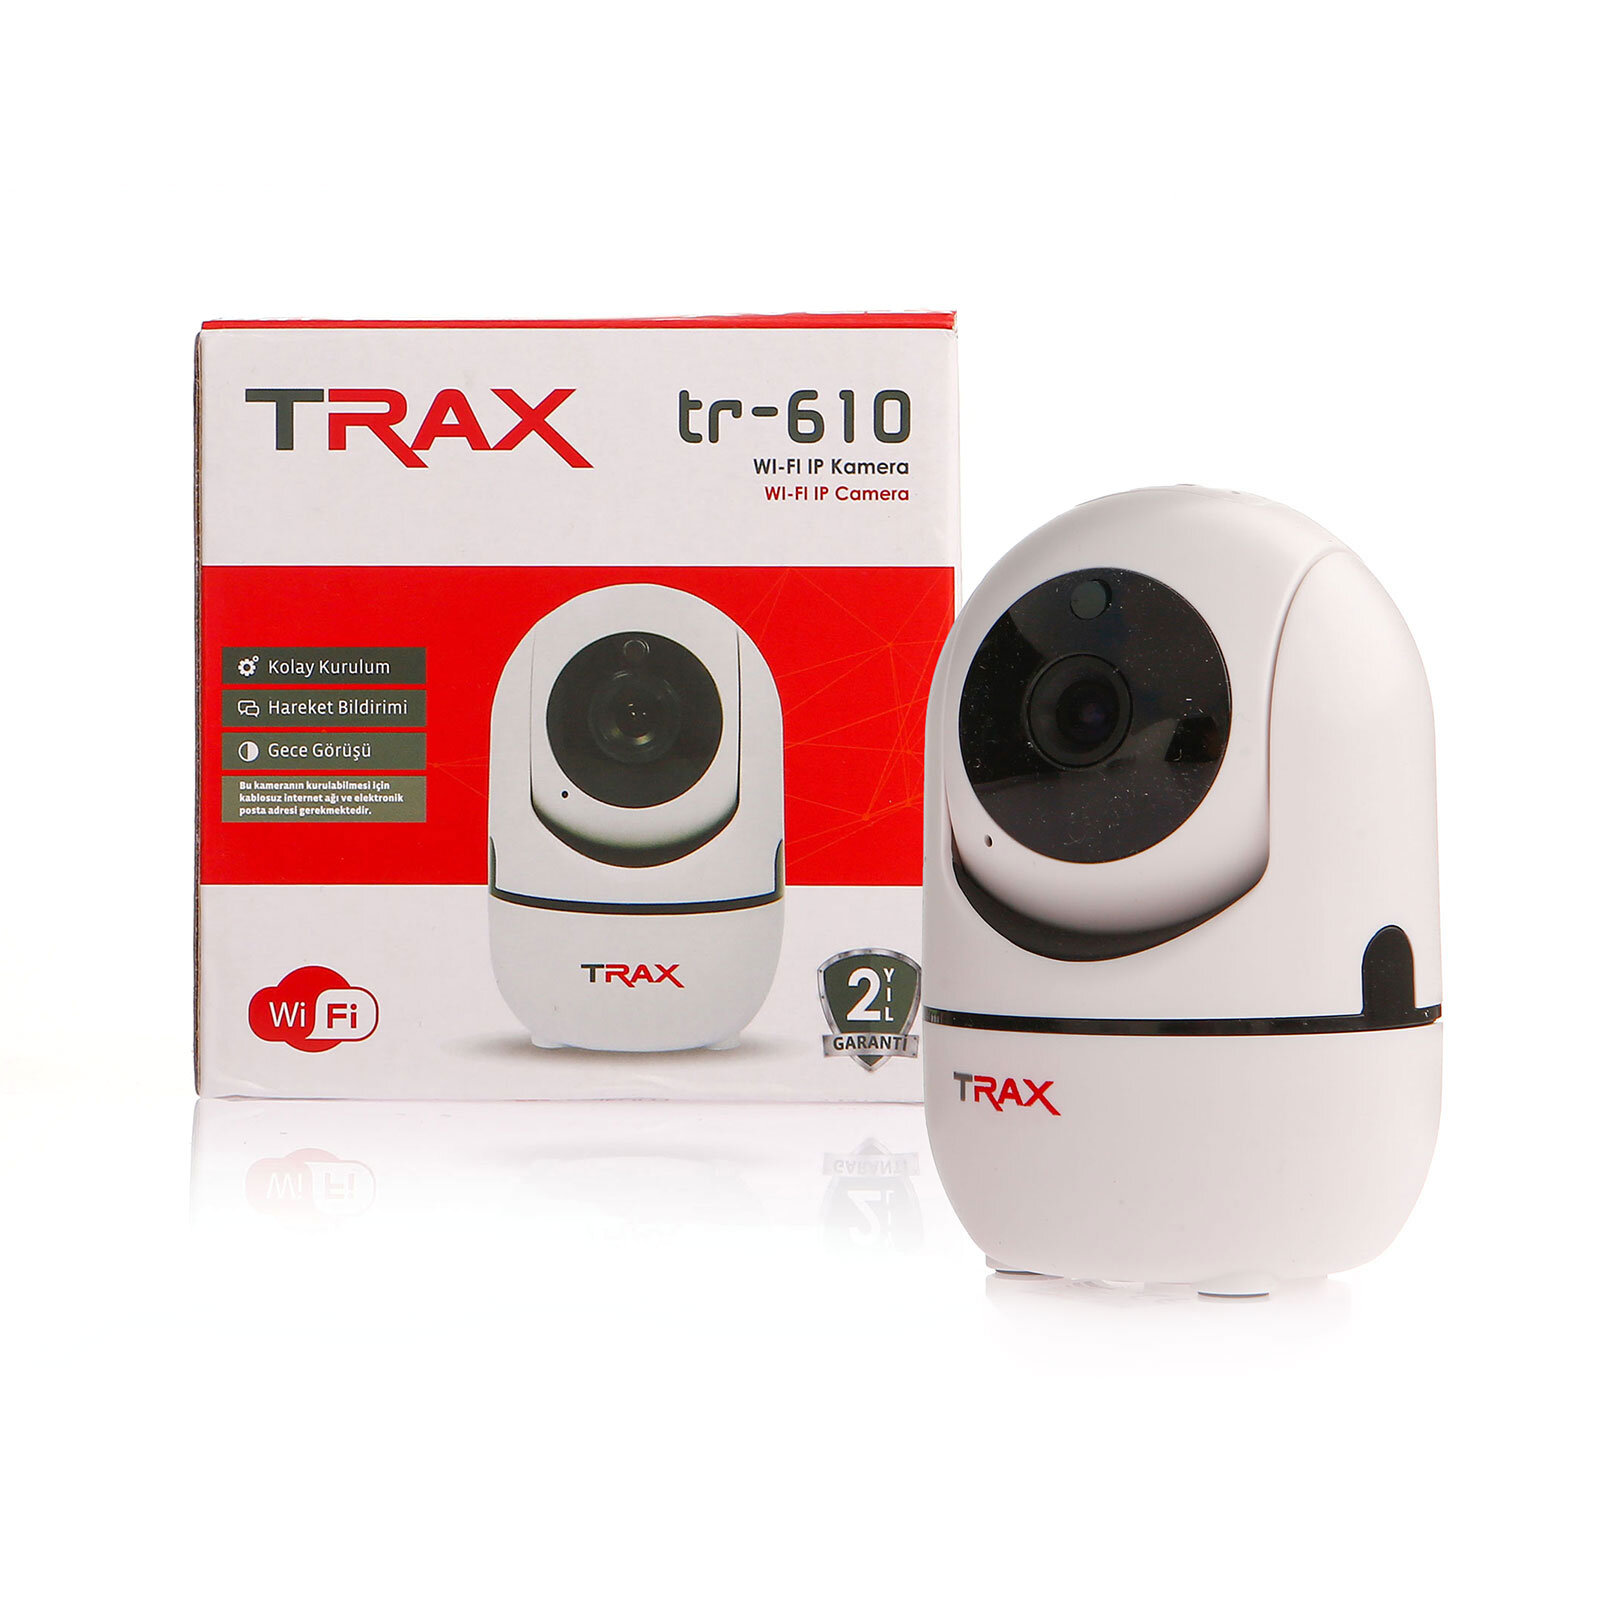 TR 610 1.0 Megapiksel WIFI IP Kamera